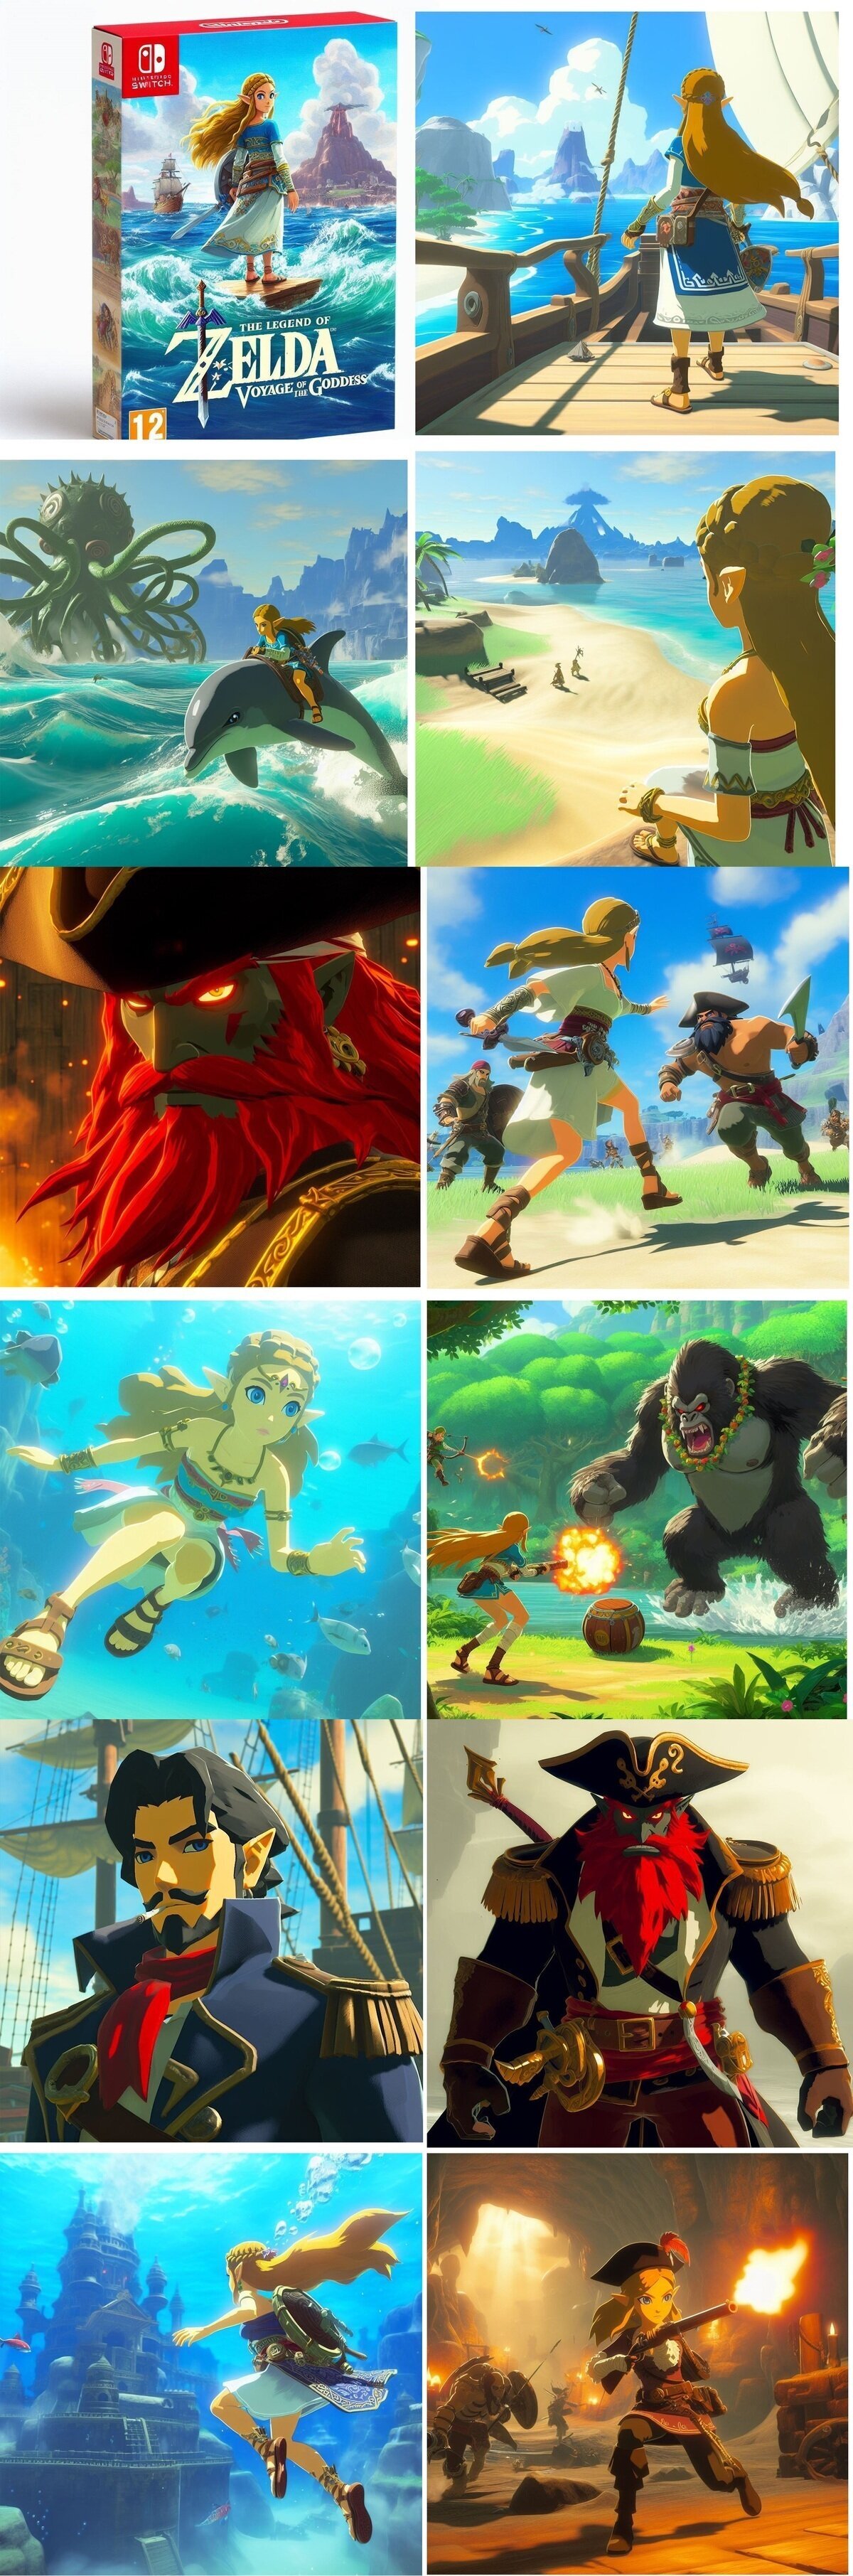 El juego que merece Zelda